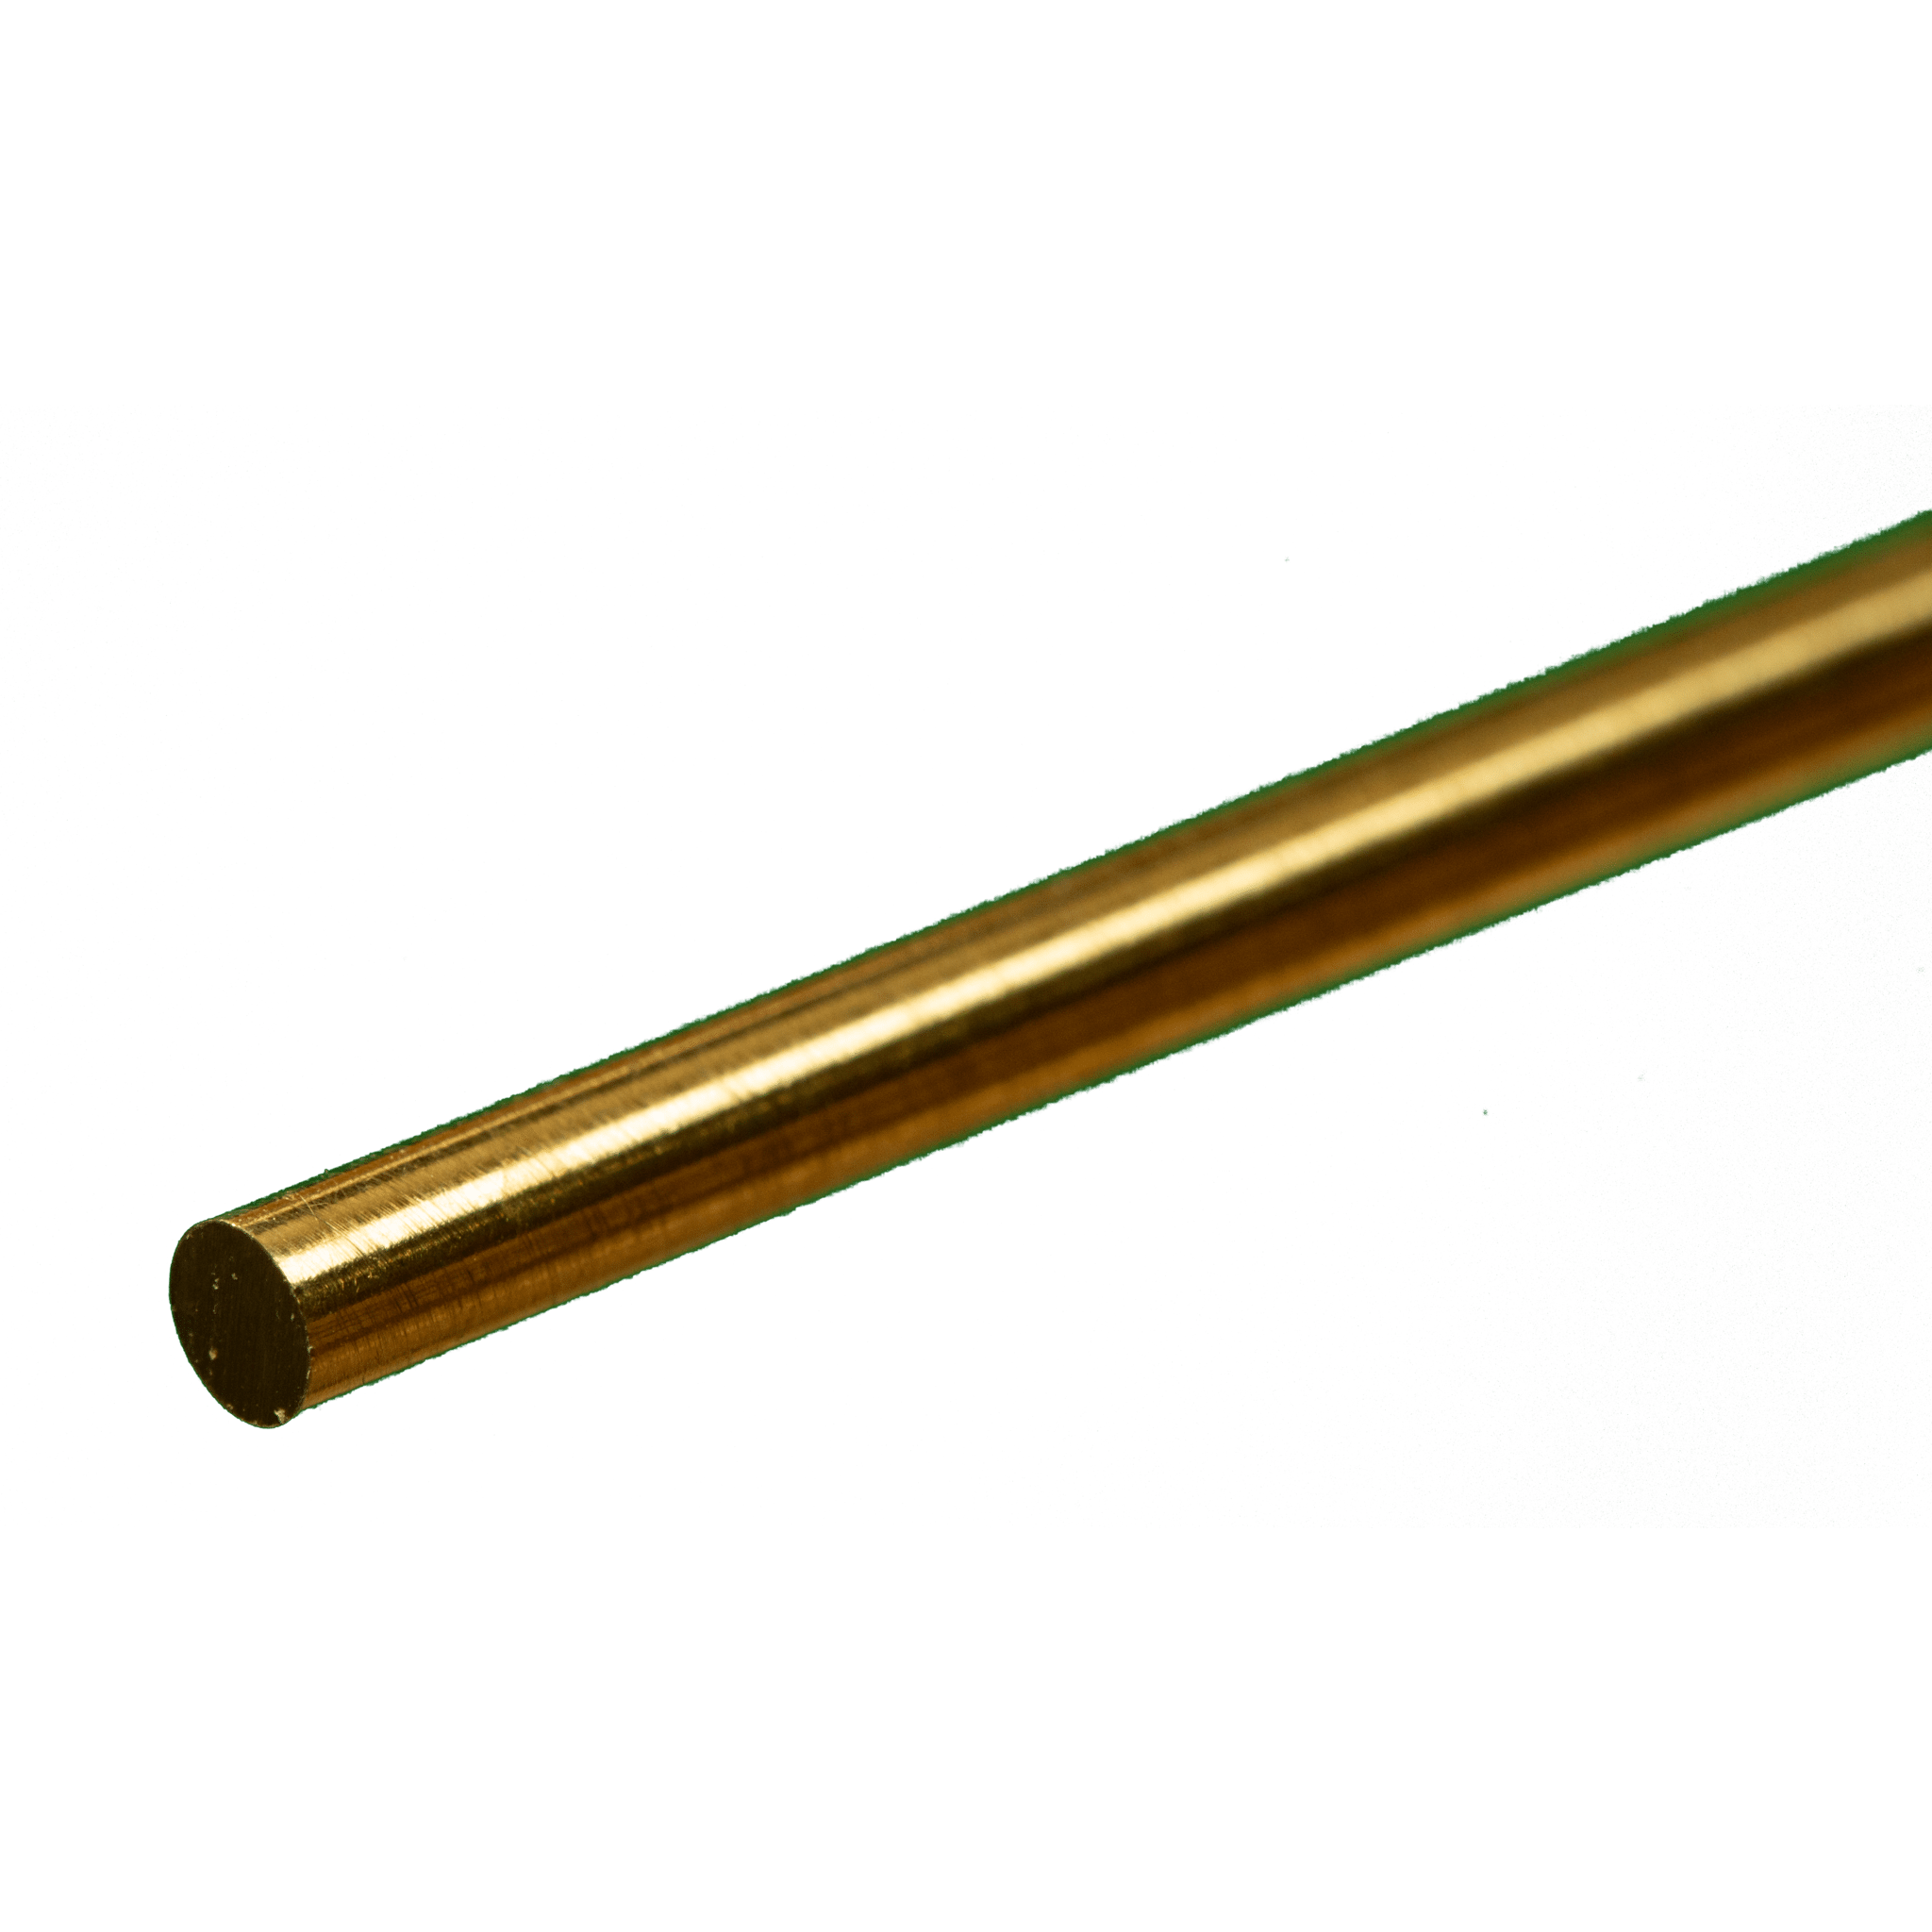 K&S Metals 8164 Round Brass Rod 1/8" OD x 12" Long (1 Piece)